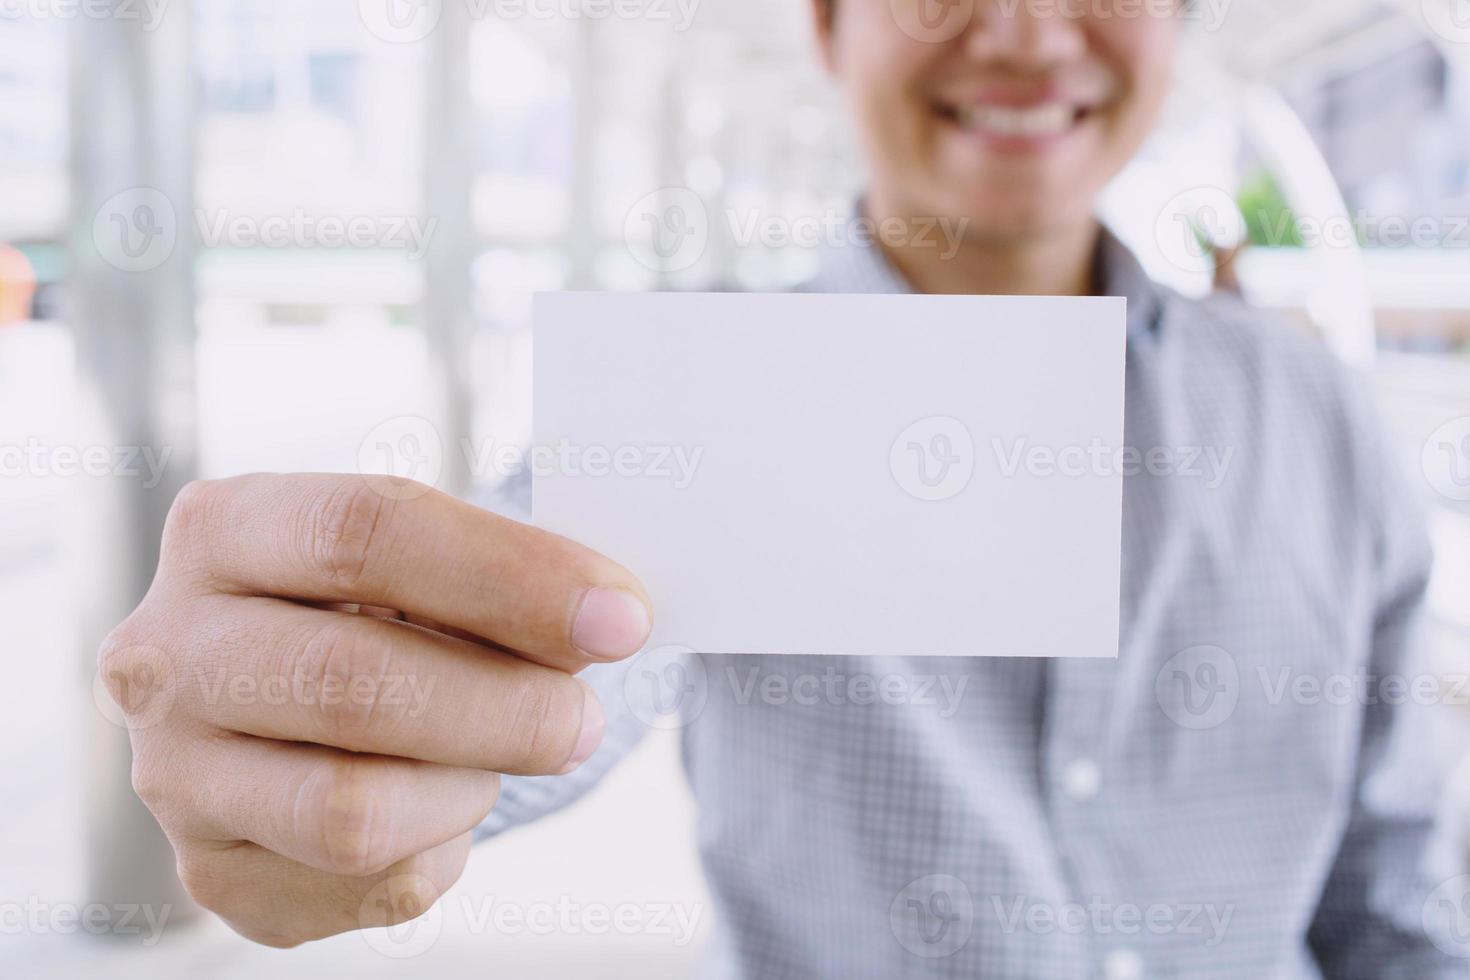 homem de negócios na mão mostra o cartão branco em branco simulado com cantos arredondados. modelo de maquete de cartão de chamada simples segurando o braço. frente de exibição de cartão de crédito de plástico. conceito de marca de negócios. foto